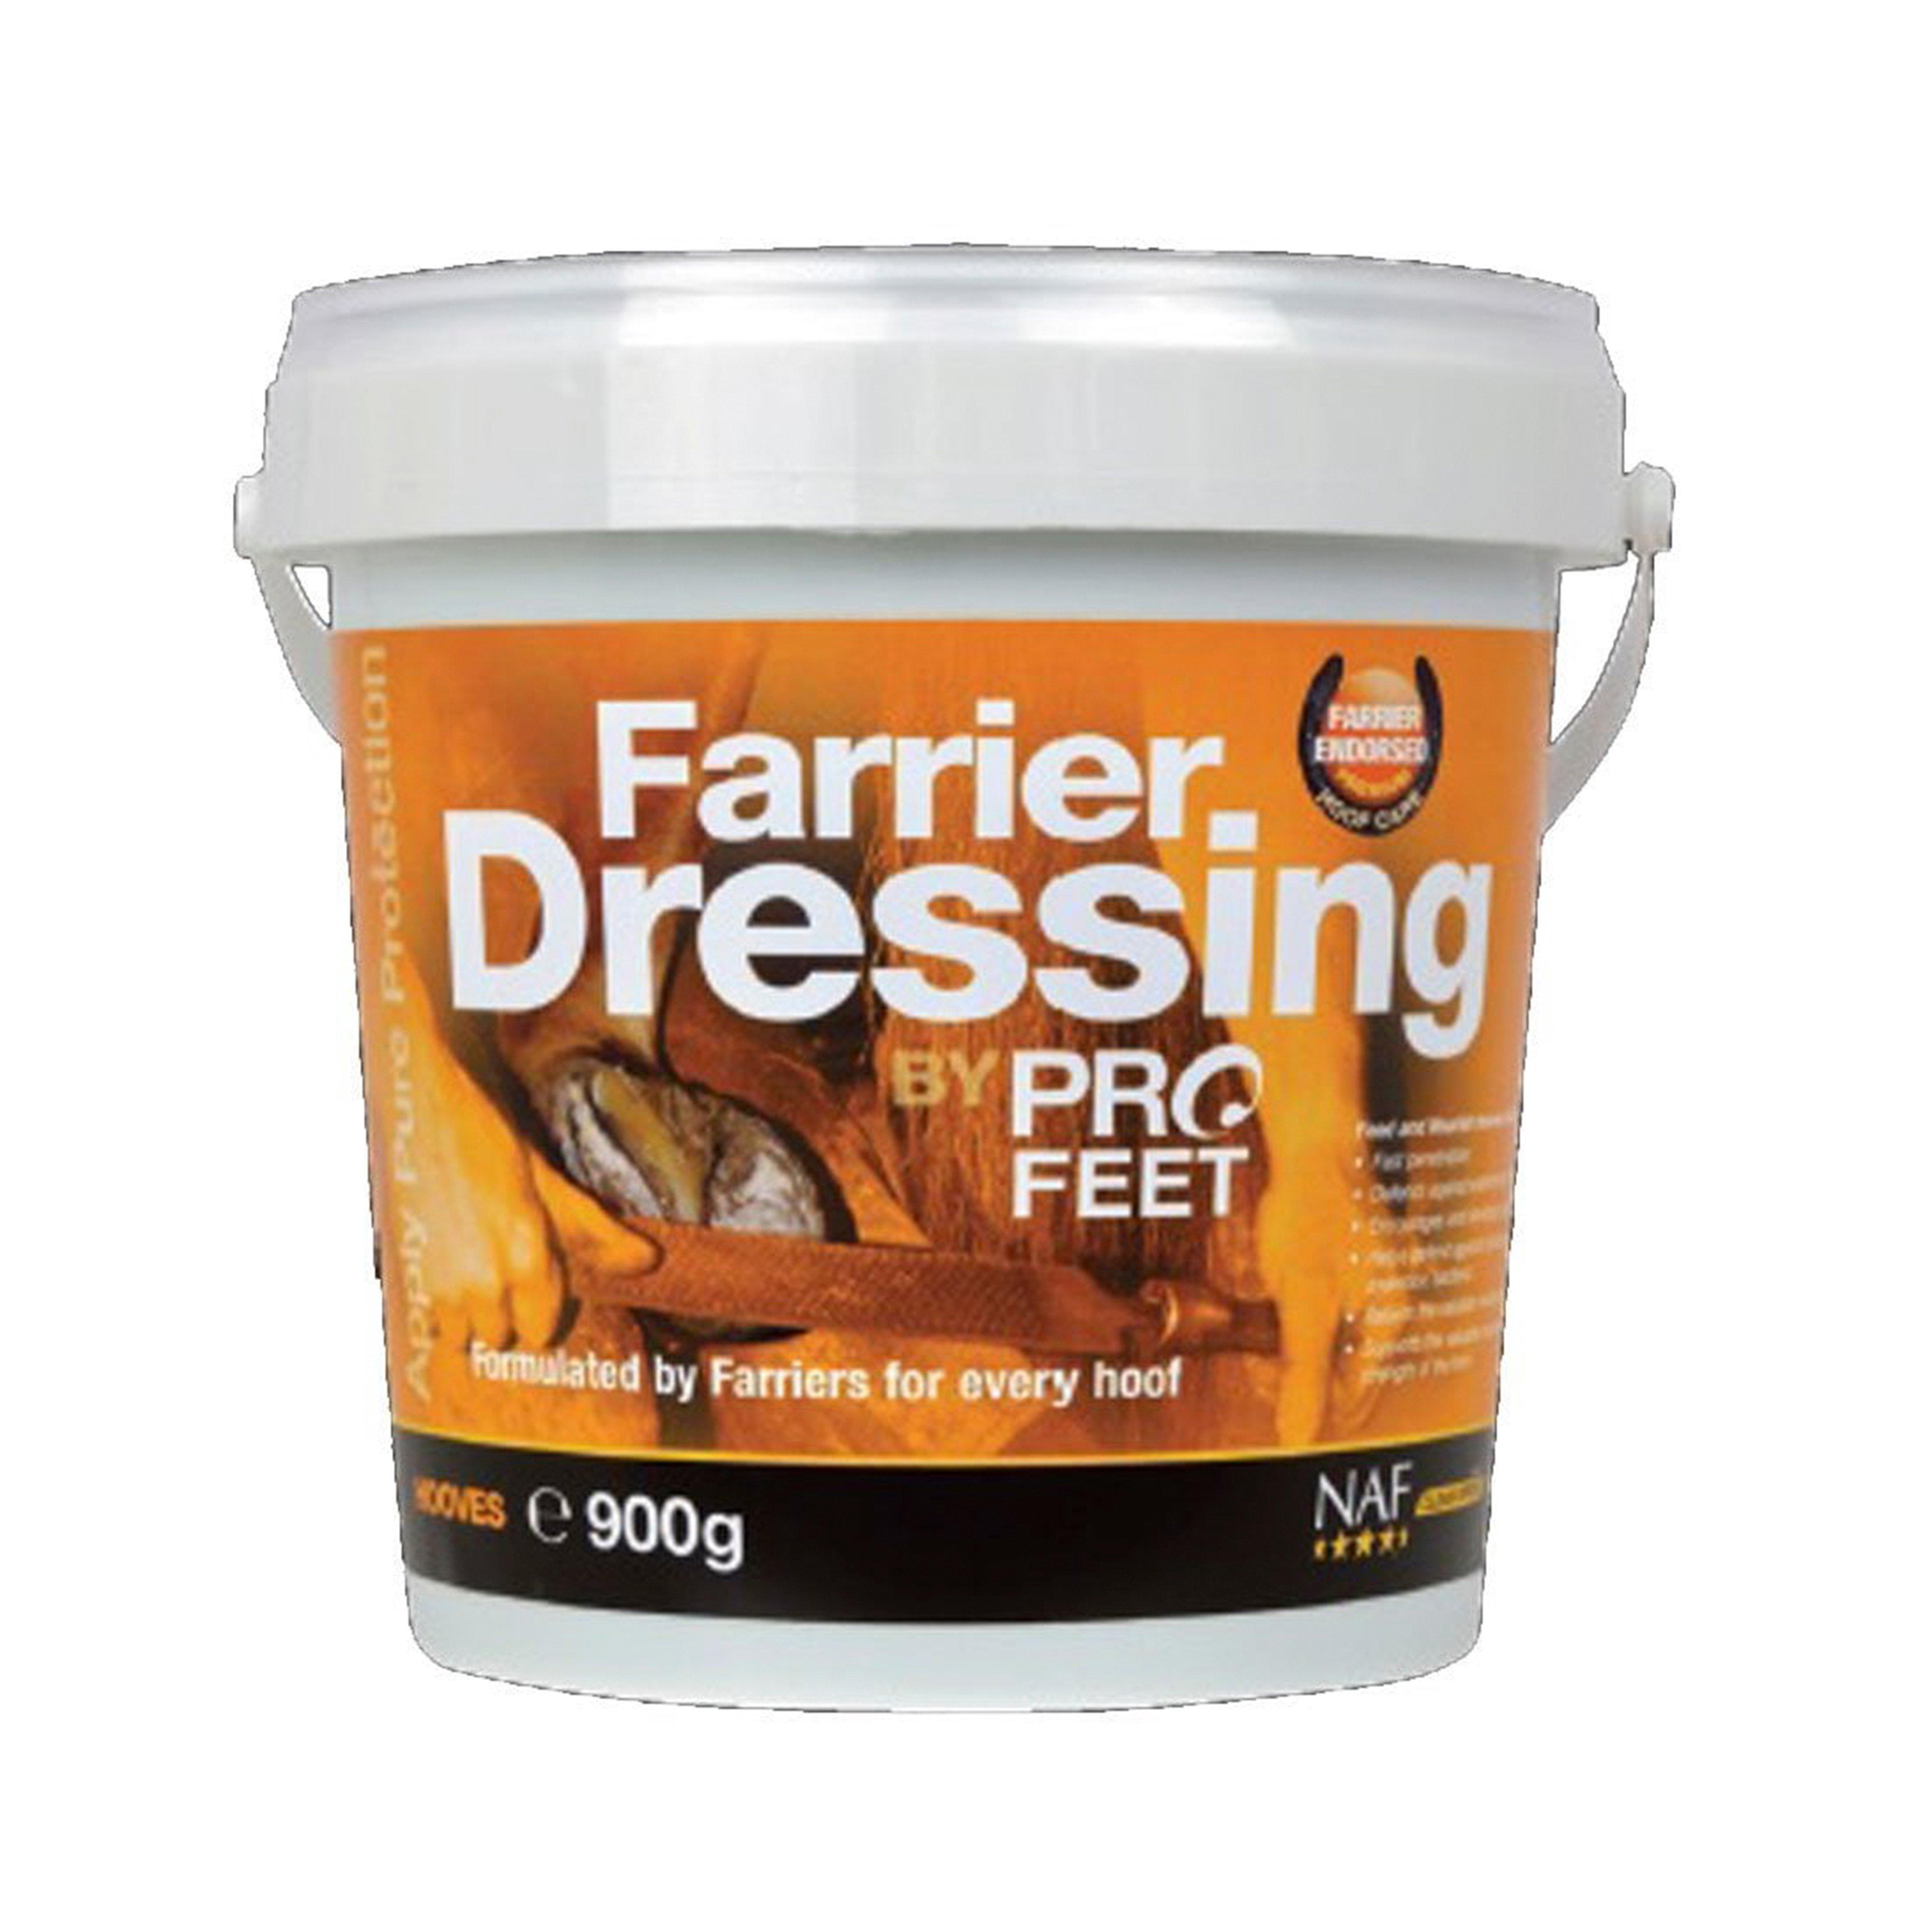 PROFEET Farrier Dressing 900g